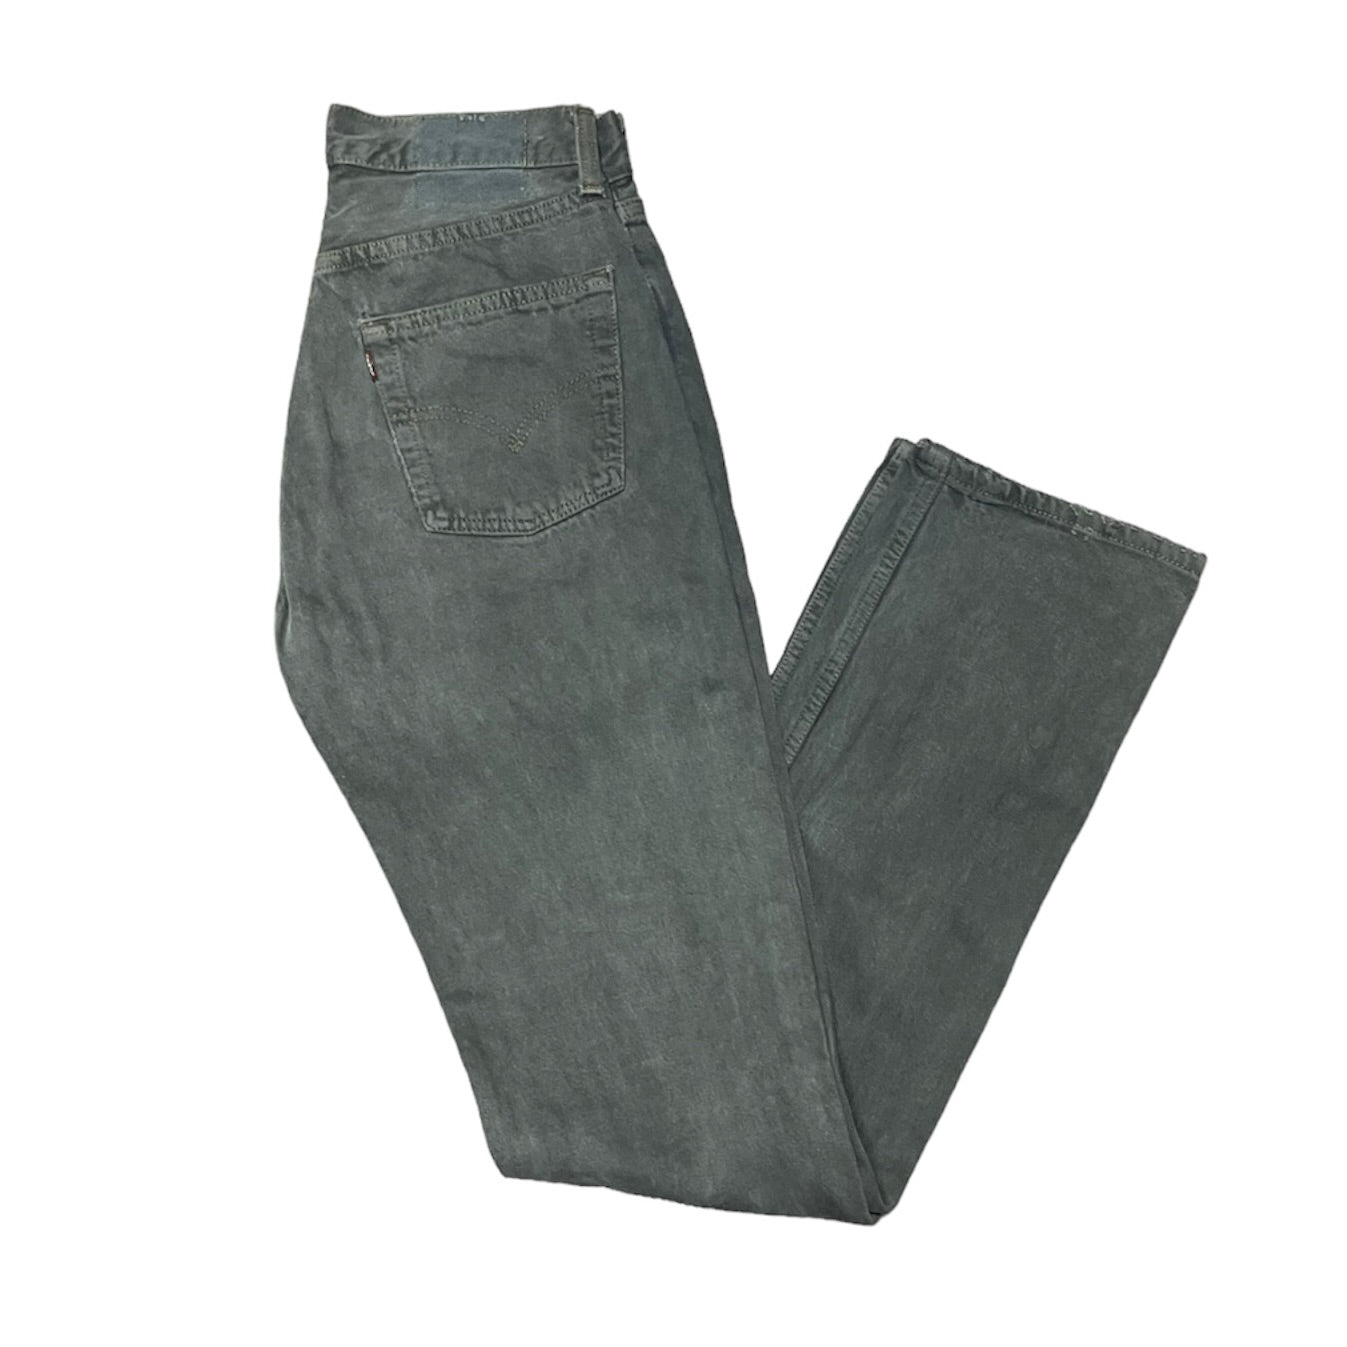 Vintage Levis 501 Grey Jeans (W29/L36)